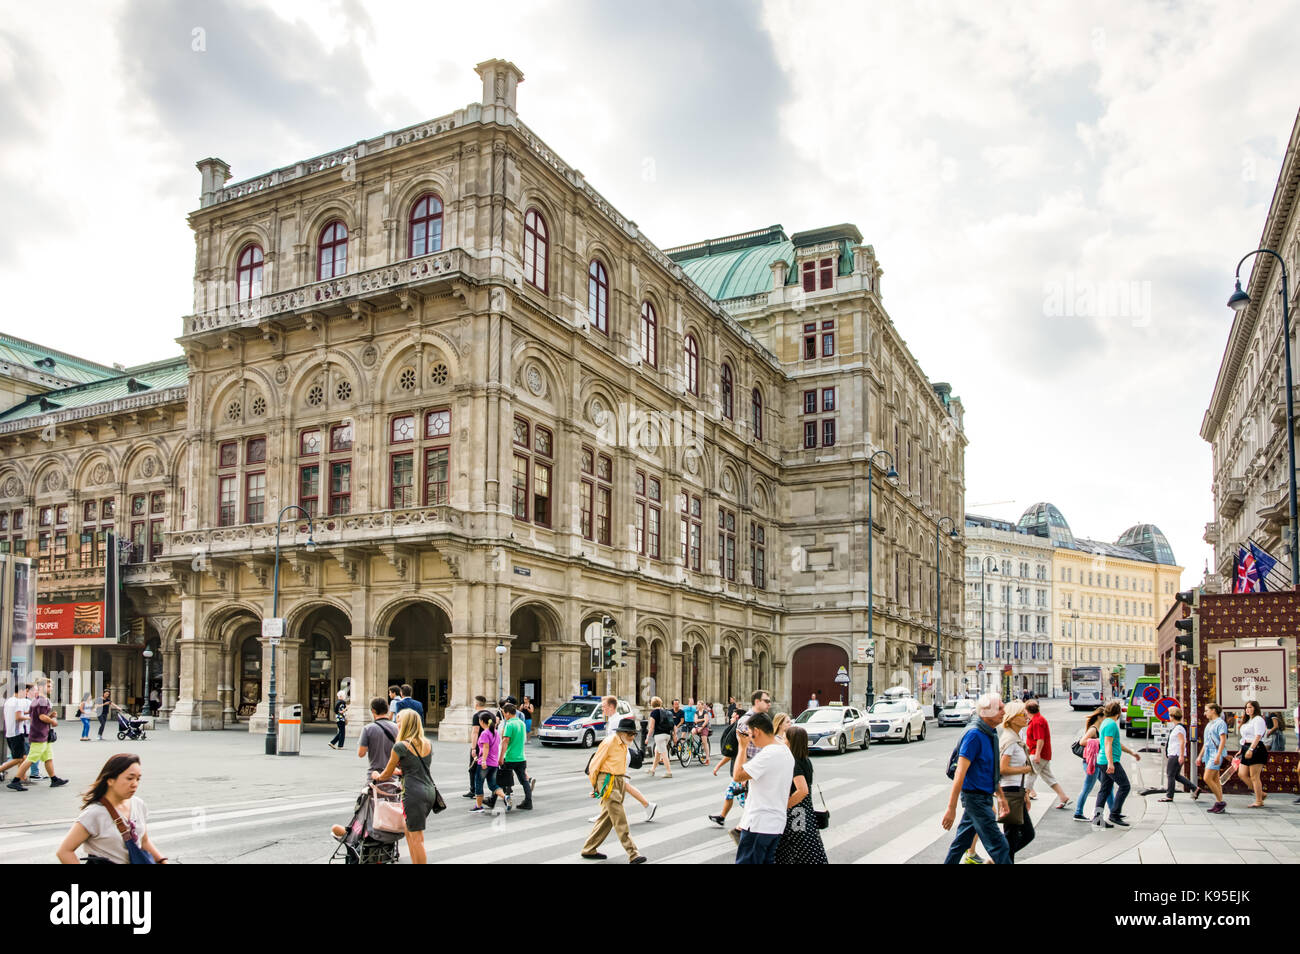 Vienna, Austria - 28 agosto: turisti presso l'opera di stato di vienna, Austria il 28 agosto 2017. Foto Stock